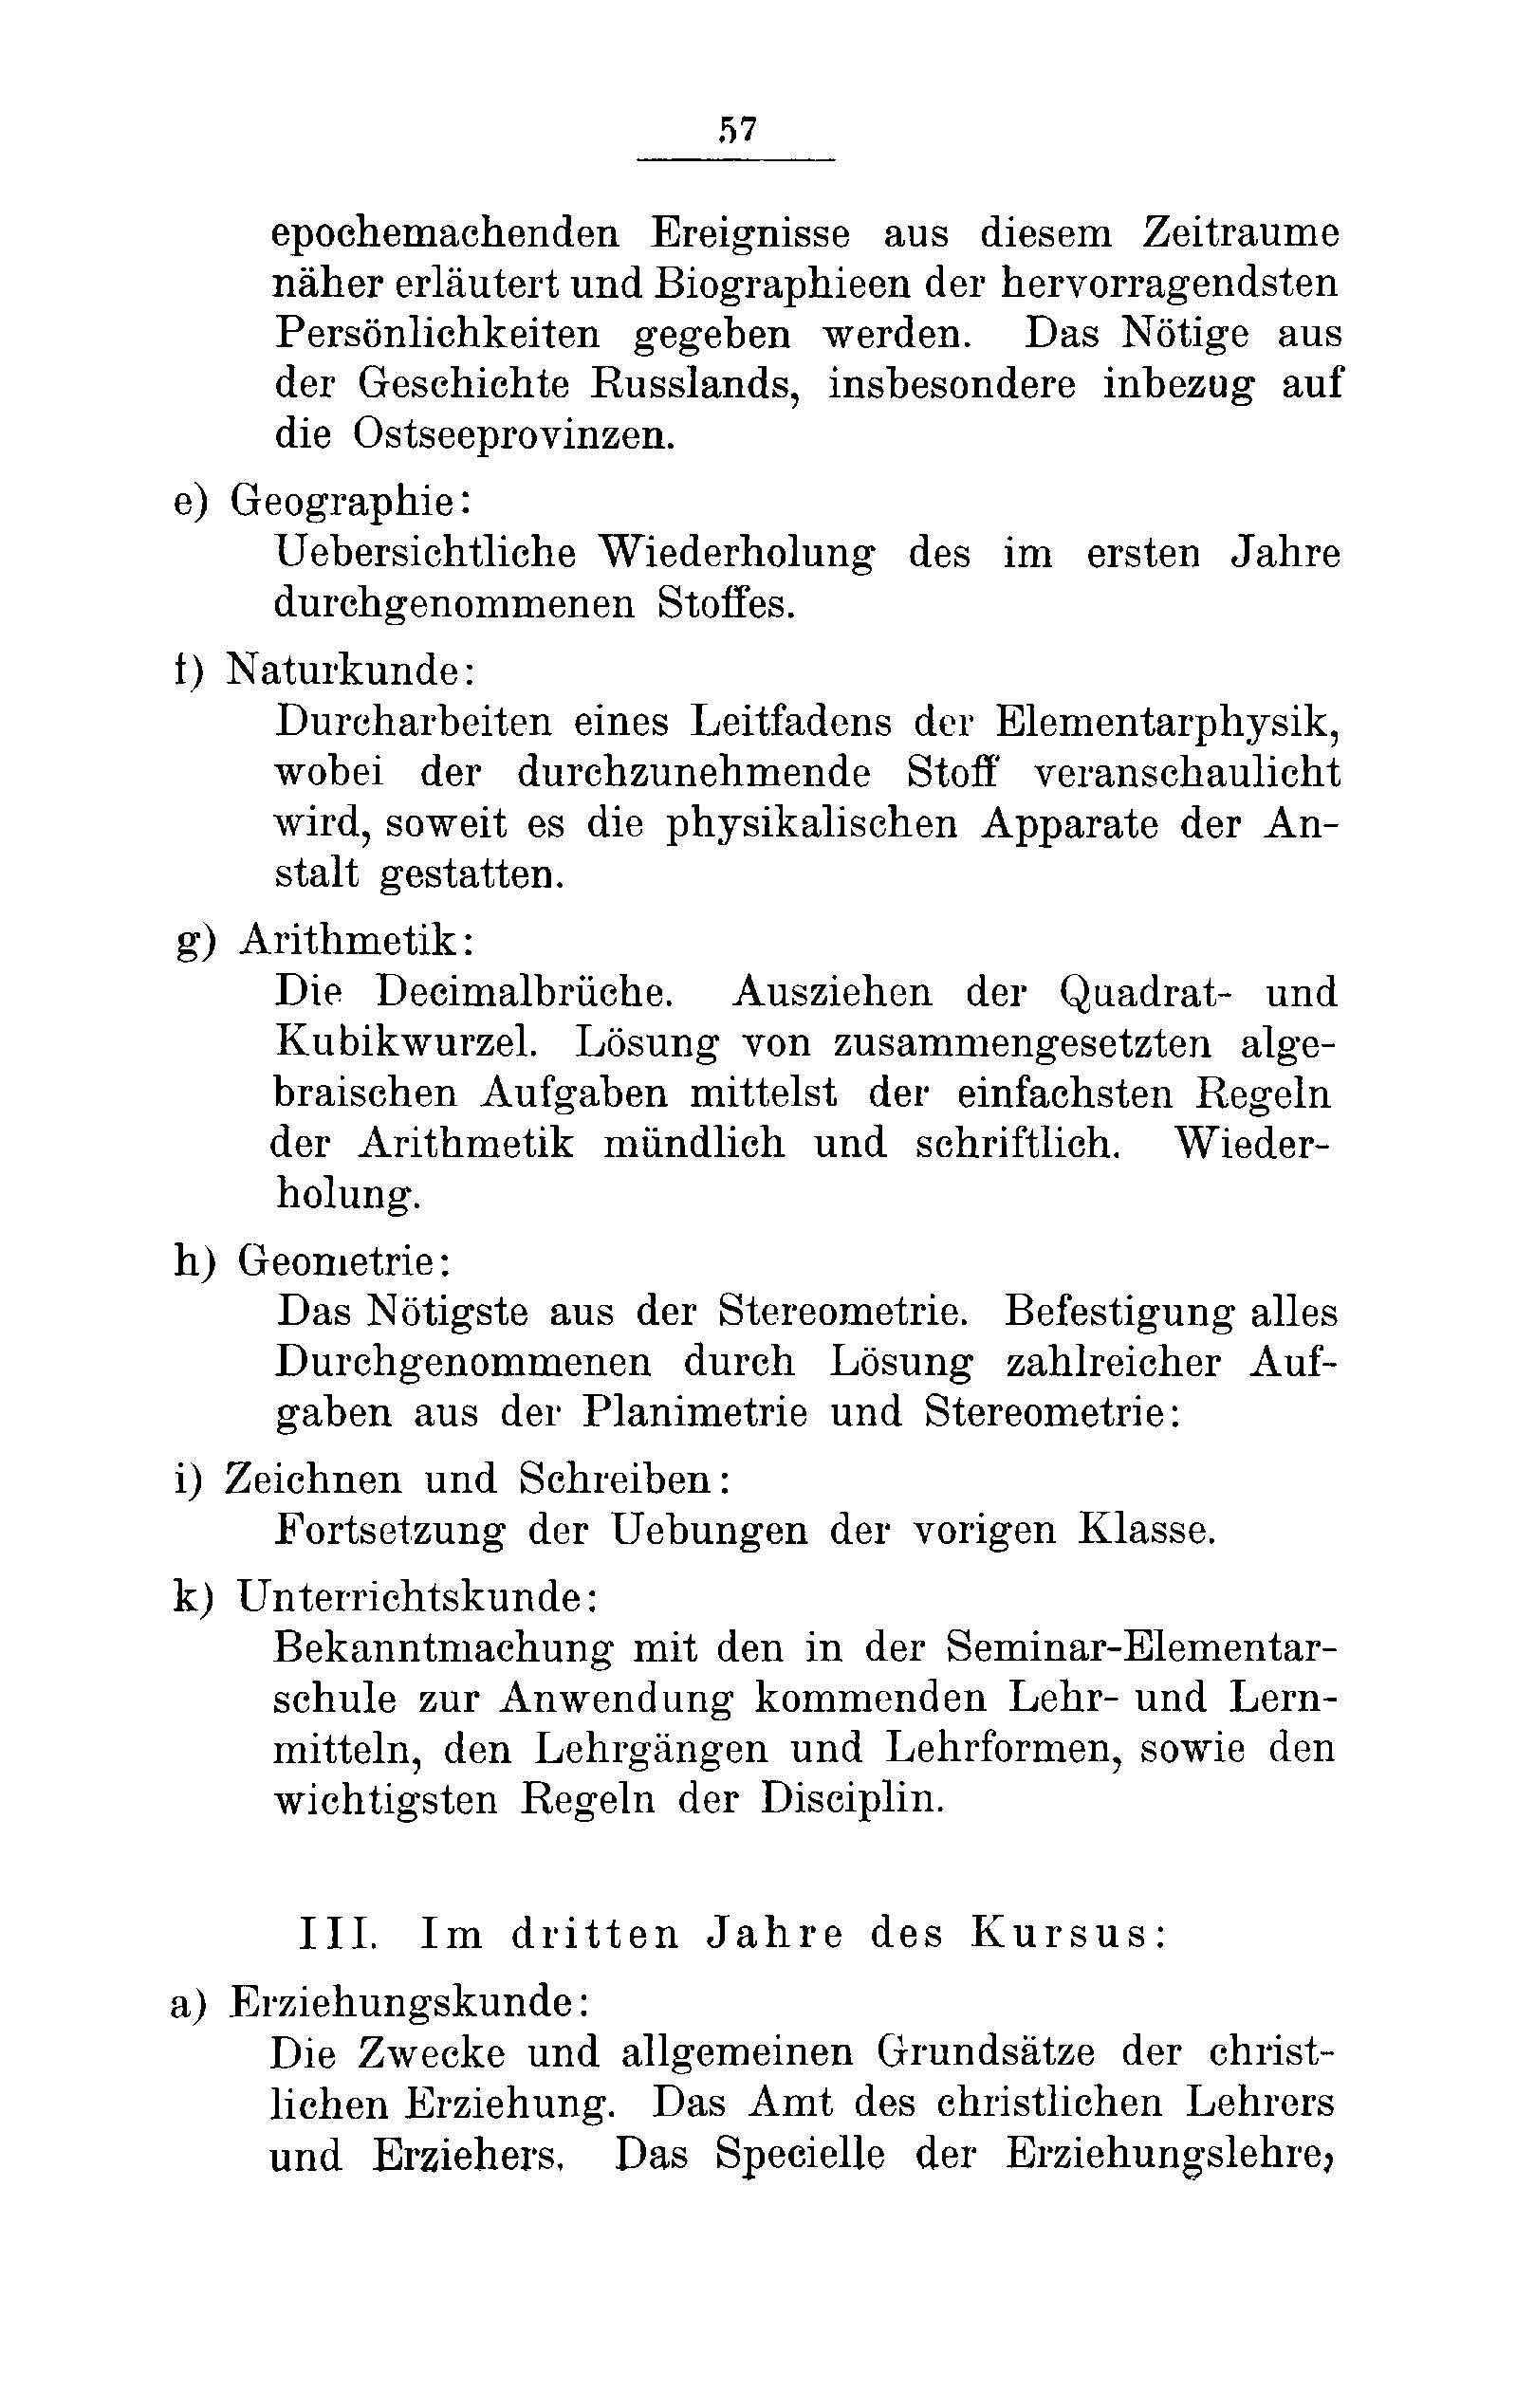 Das Erste Dorpatsche Lehrer-Seminar (1890) | 60. Main body of text